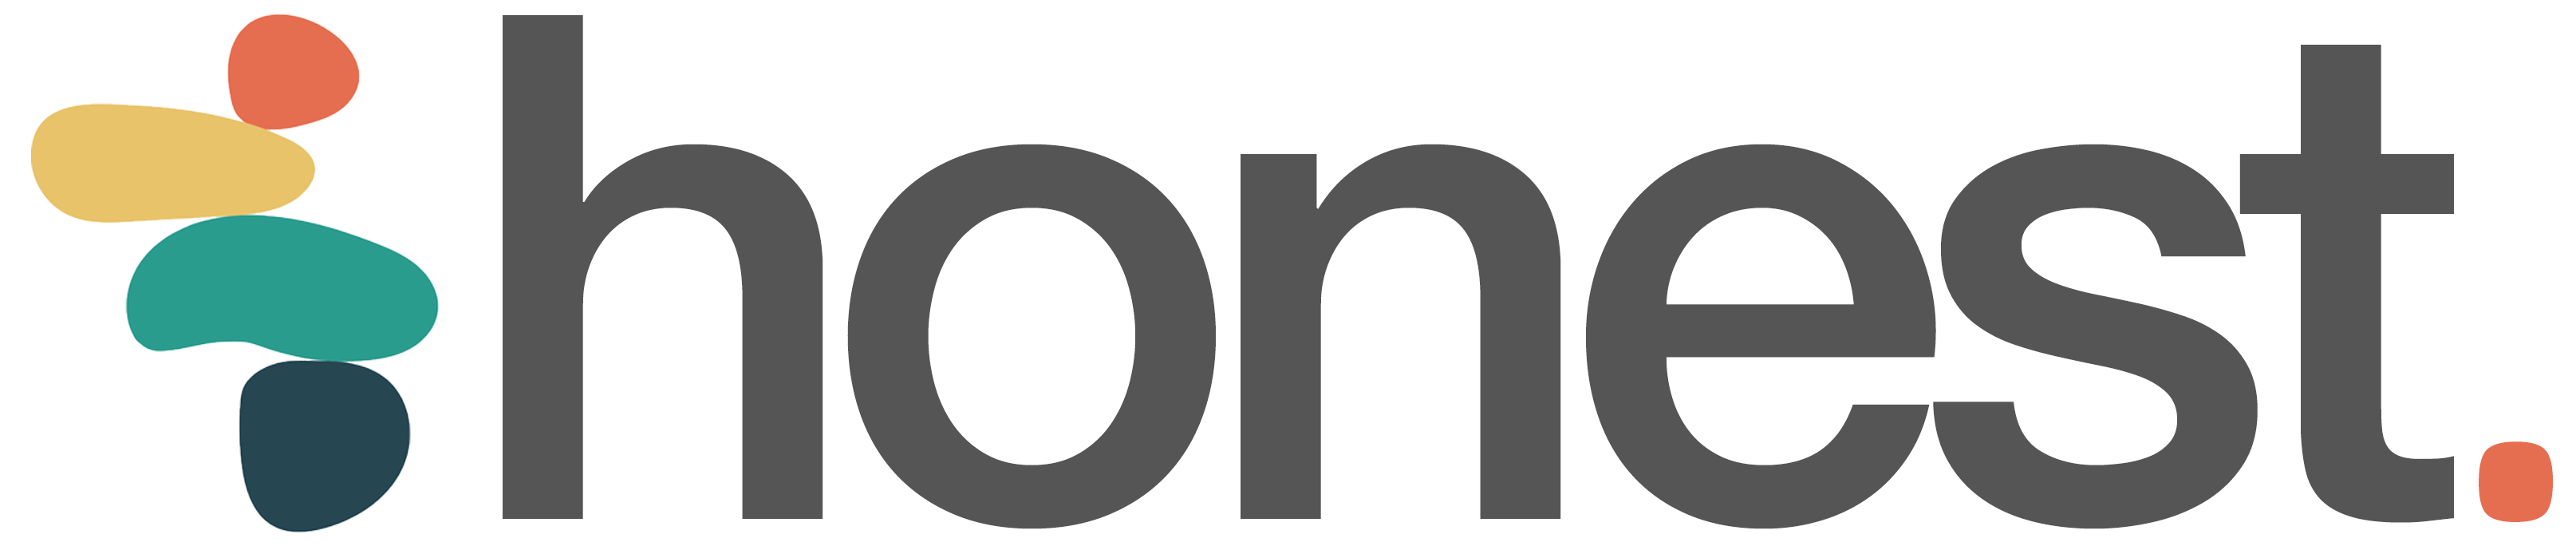 logo for Honest Care Agency Ltd